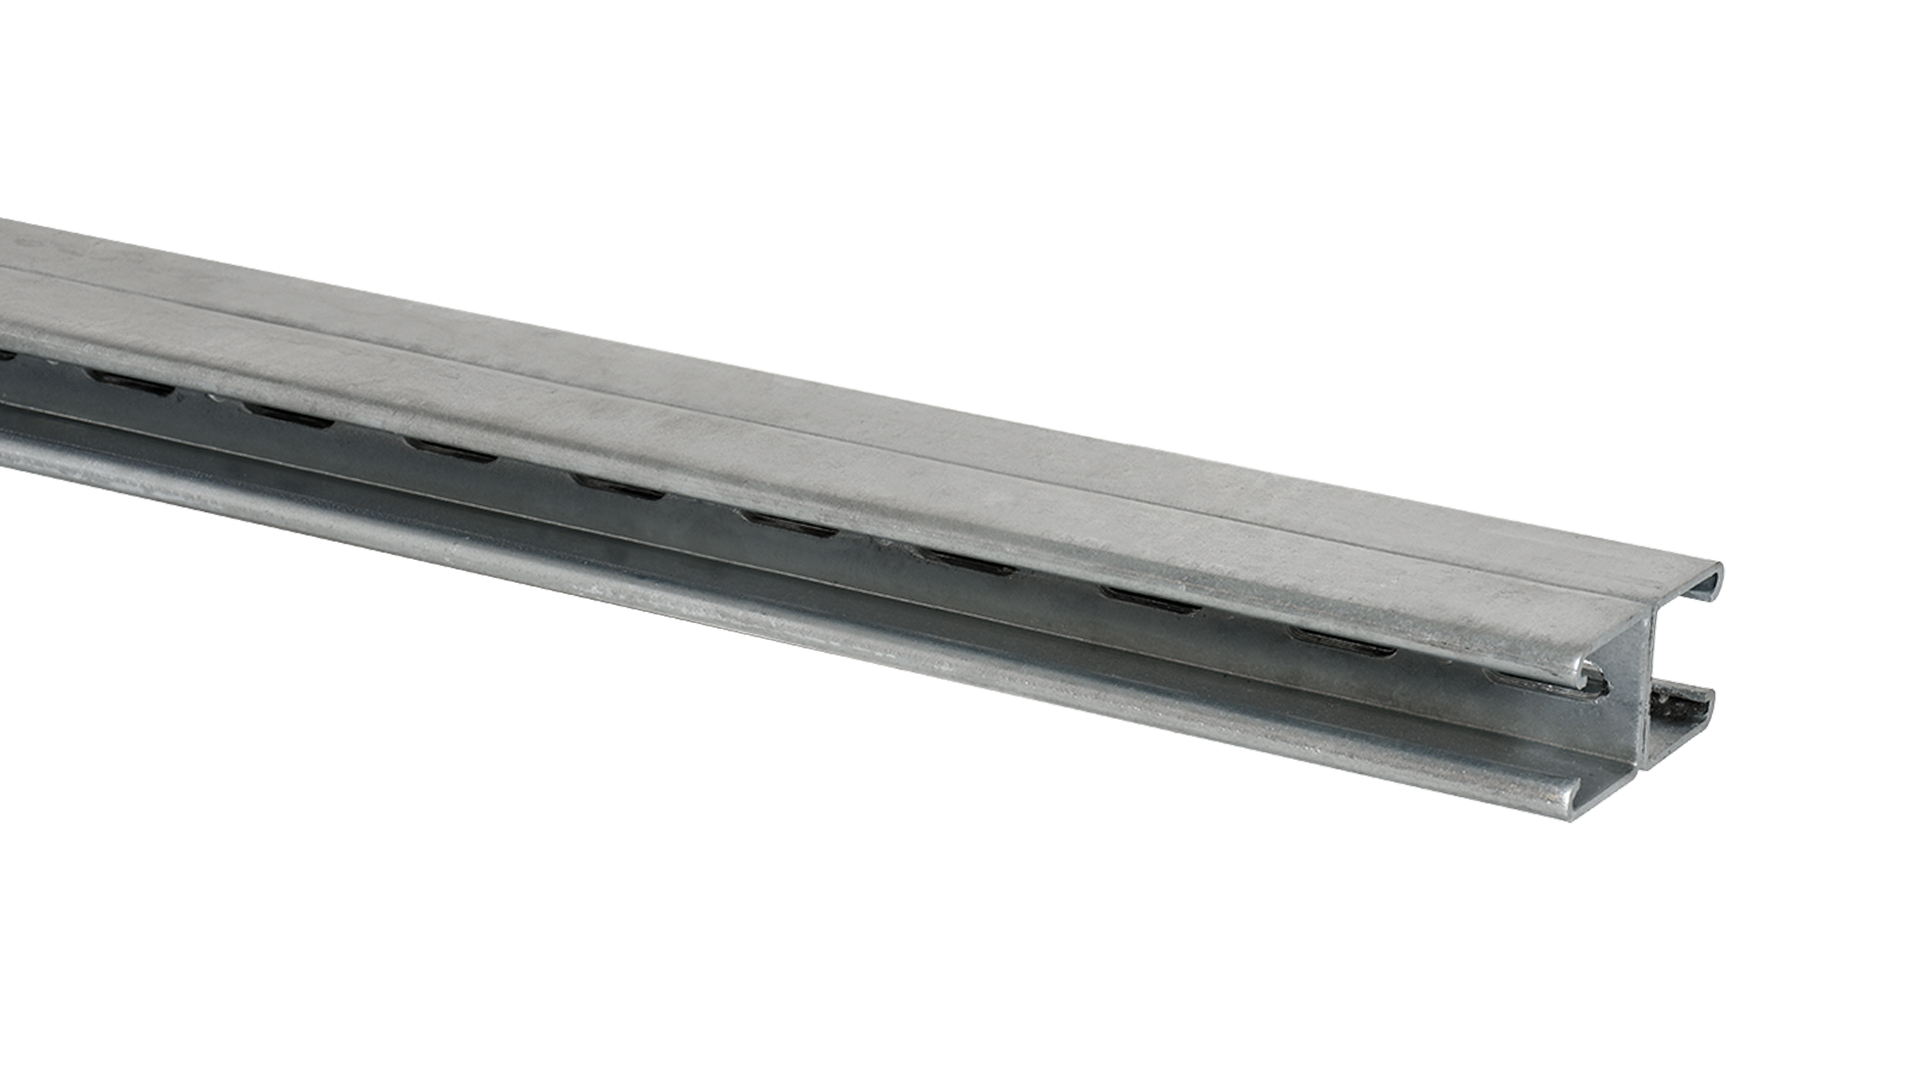 Anchor rail 2x41x41 mm 3000 mm